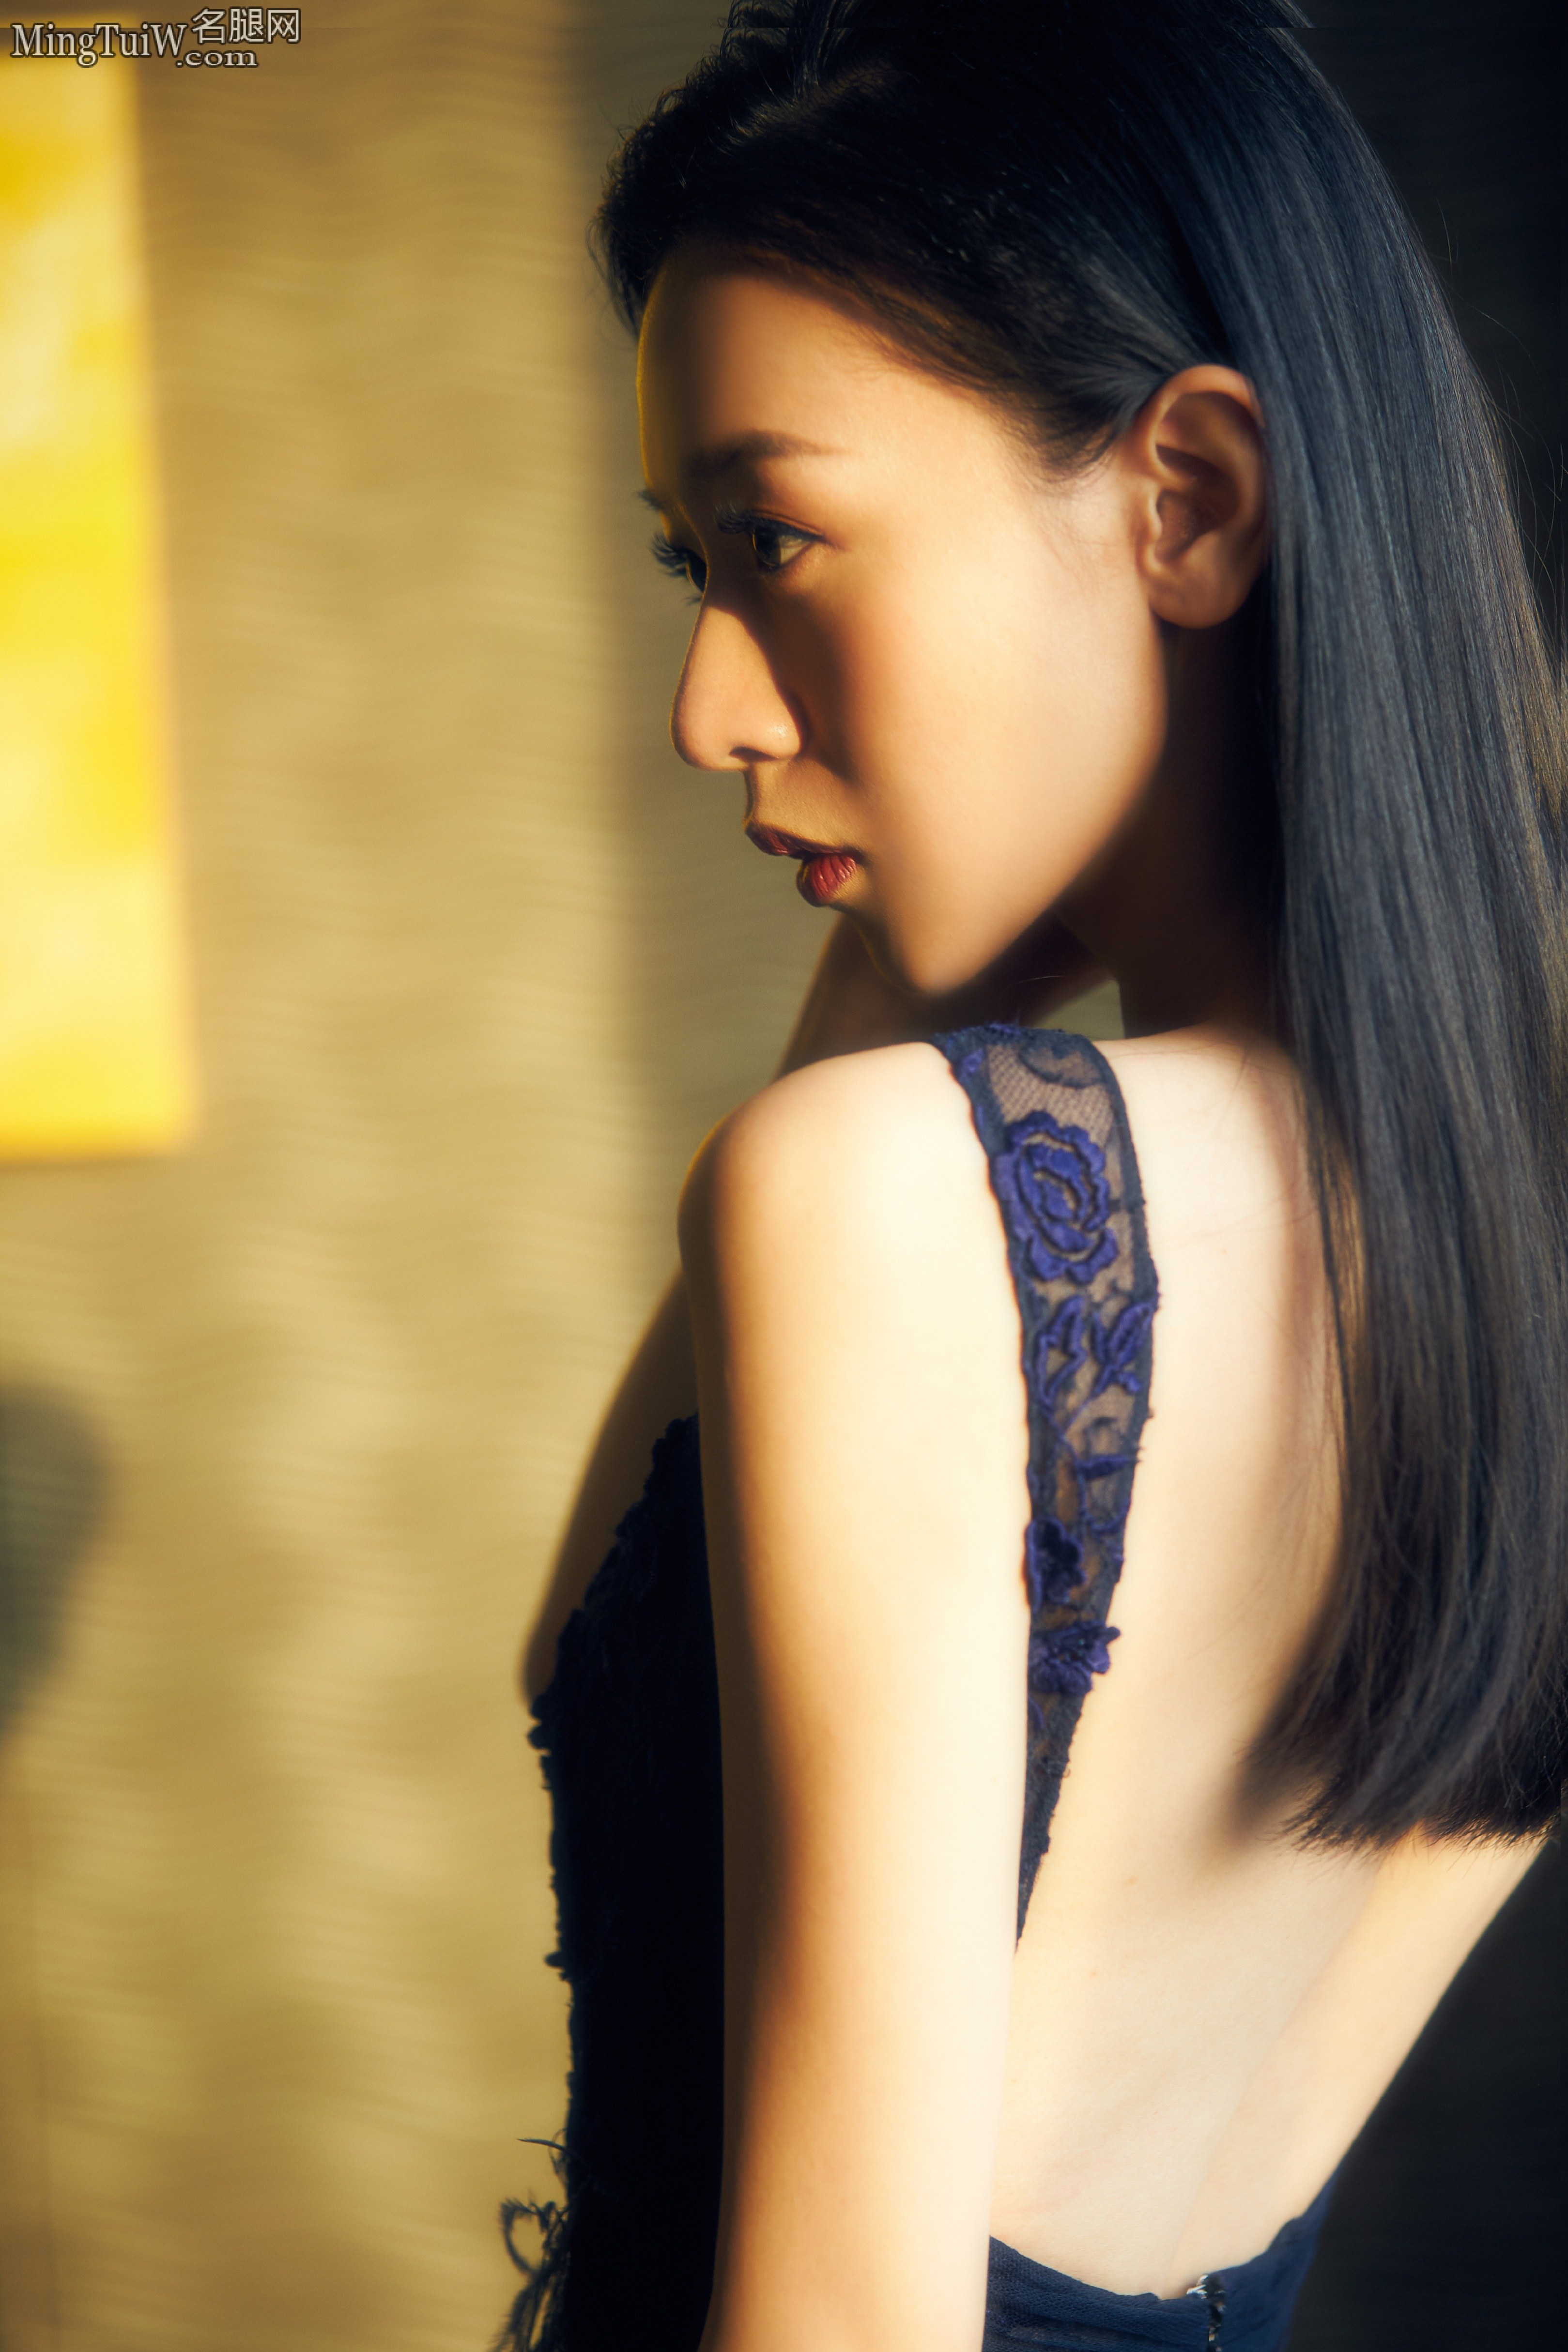 90后美女刘木子蓝色礼服露出光滑的美背（1/9） - 图片 - 名腿网